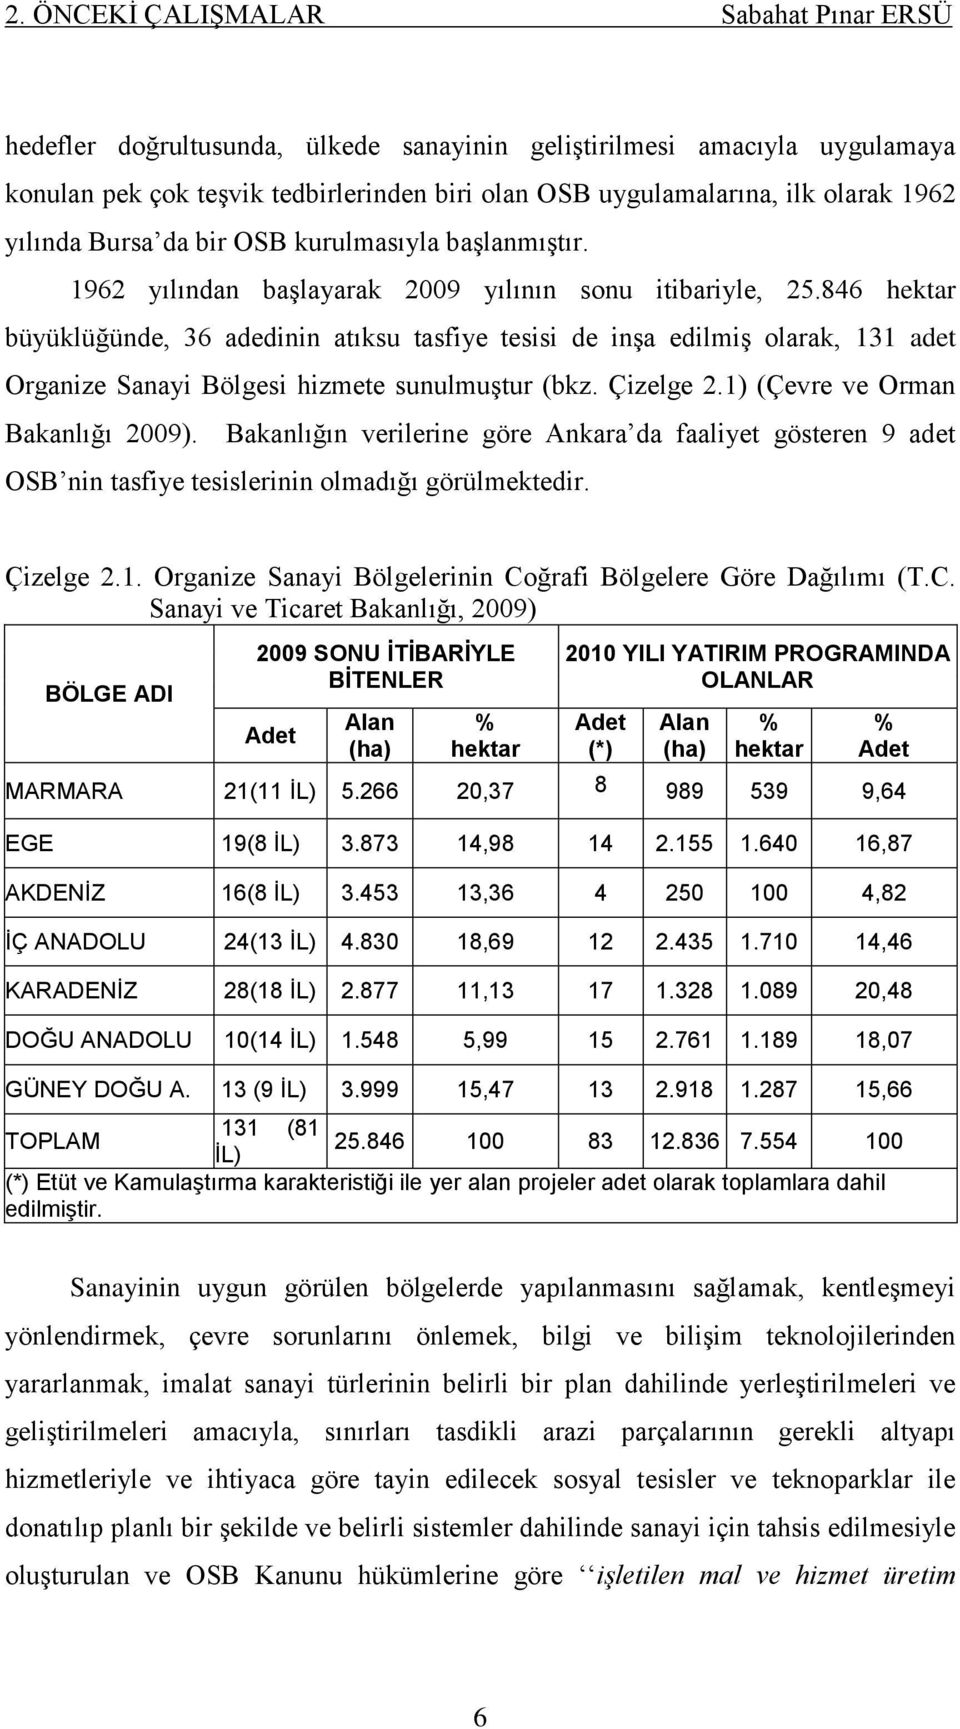 846 hektar büyüklüğünde, 36 adedinin atıksu tasfiye tesisi de inģa edilmiģ olarak, 131 adet Organize Sanayi Bölgesi hizmete sunulmuģtur (bkz. Çizelge 2.1) (Çevre ve Orman Bakanlığı 2009).